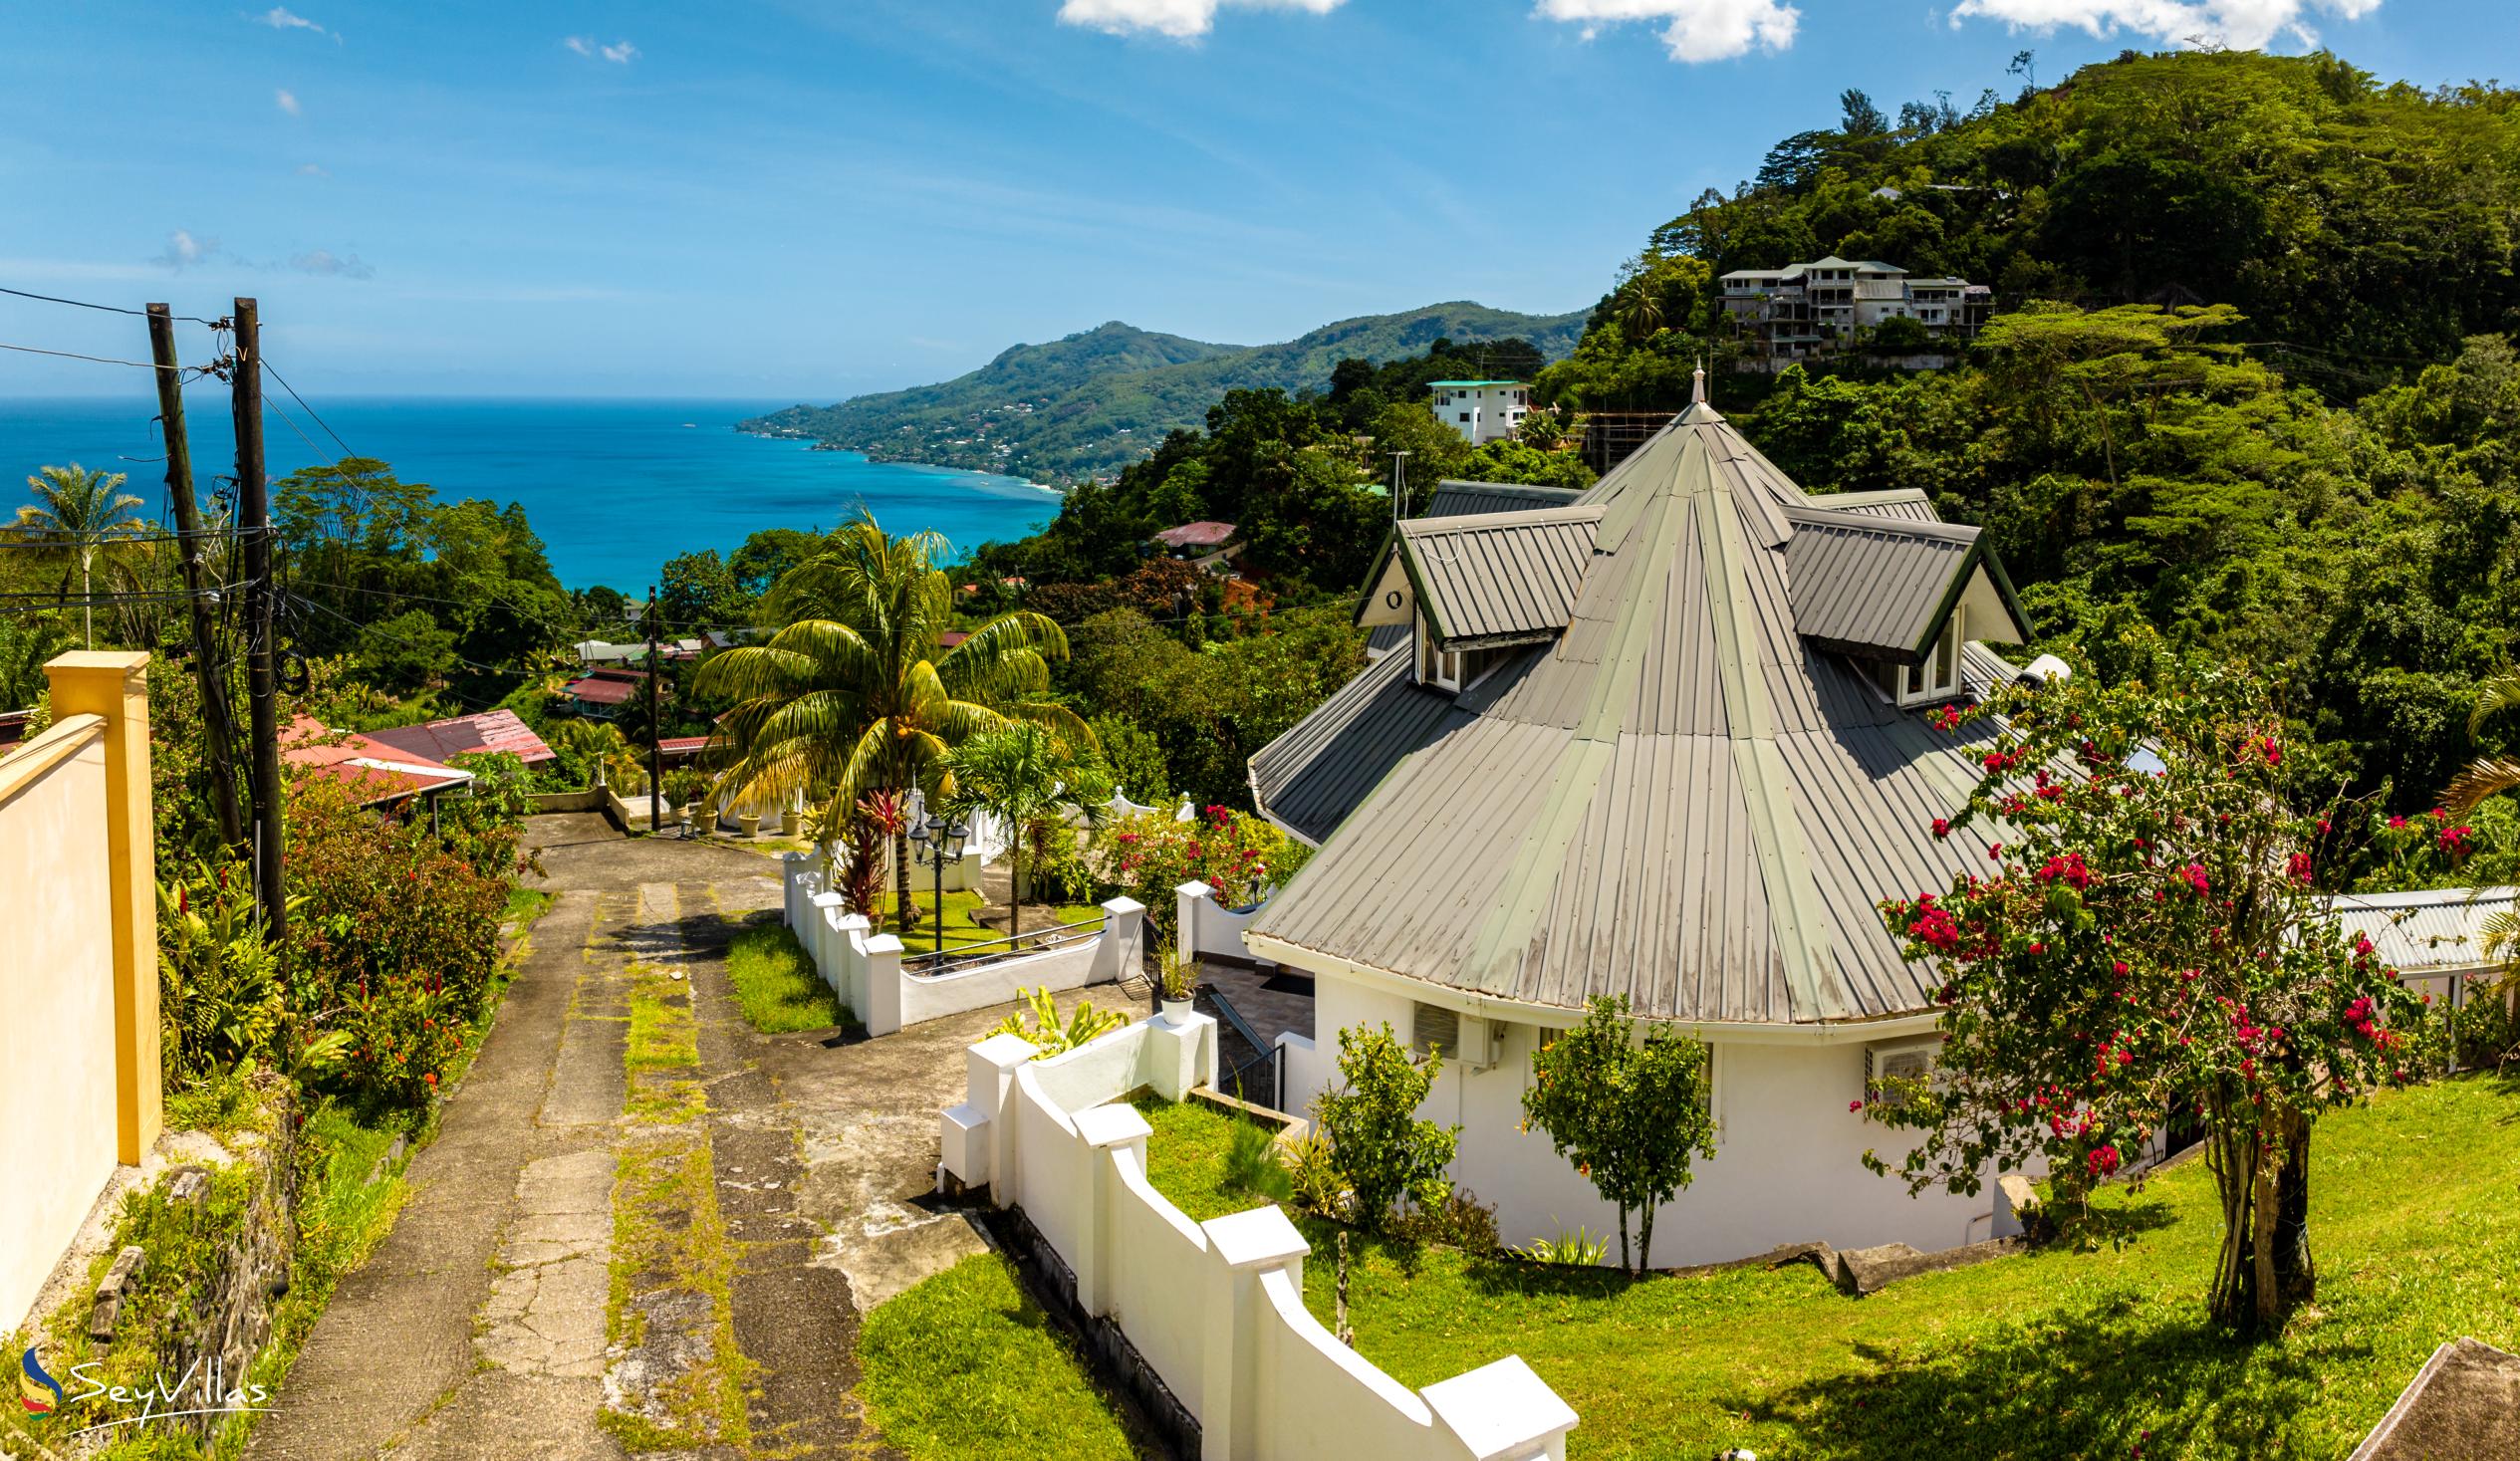 Photo 1: Casuarina Hill Villa - Outdoor area - Mahé (Seychelles)